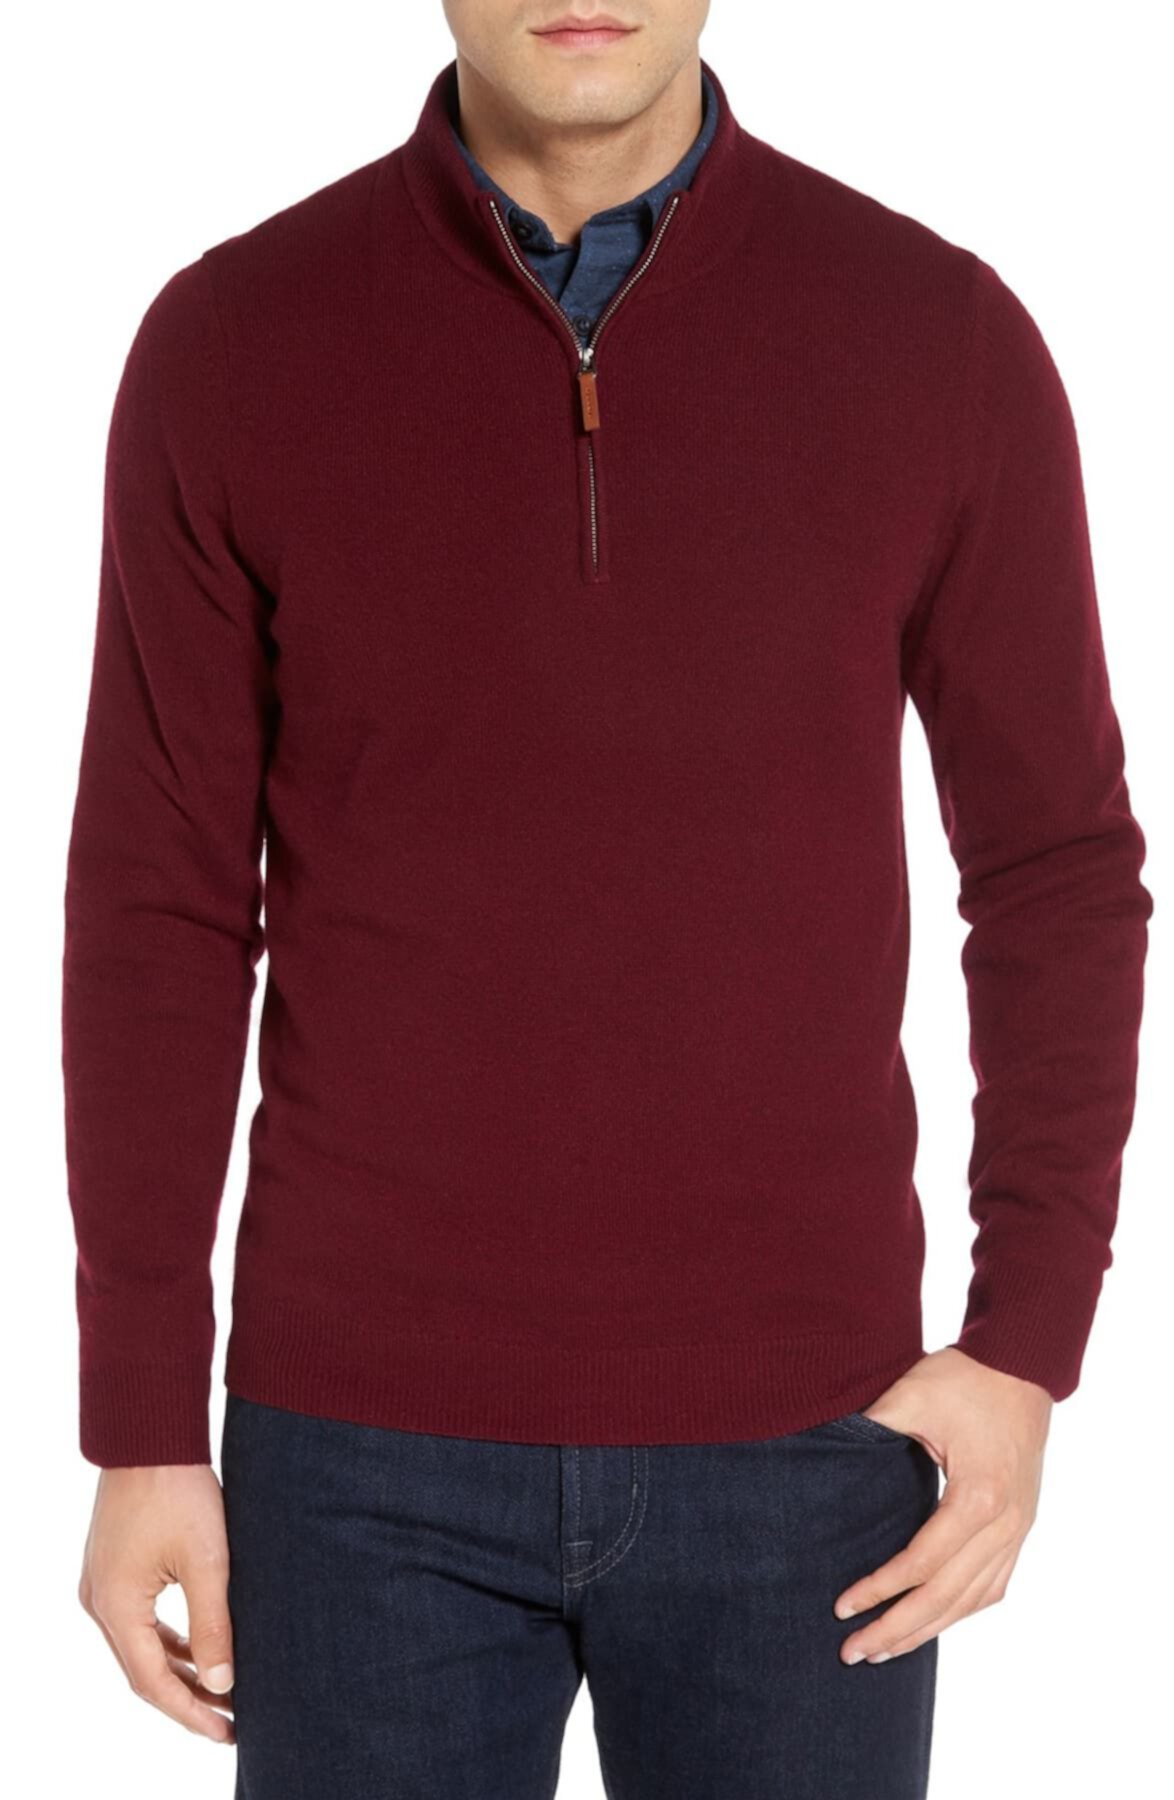 Регулярный пуловер с кашемировым принтом на молнии (обычный и высокий) NORDSTROM MEN'S SHOP